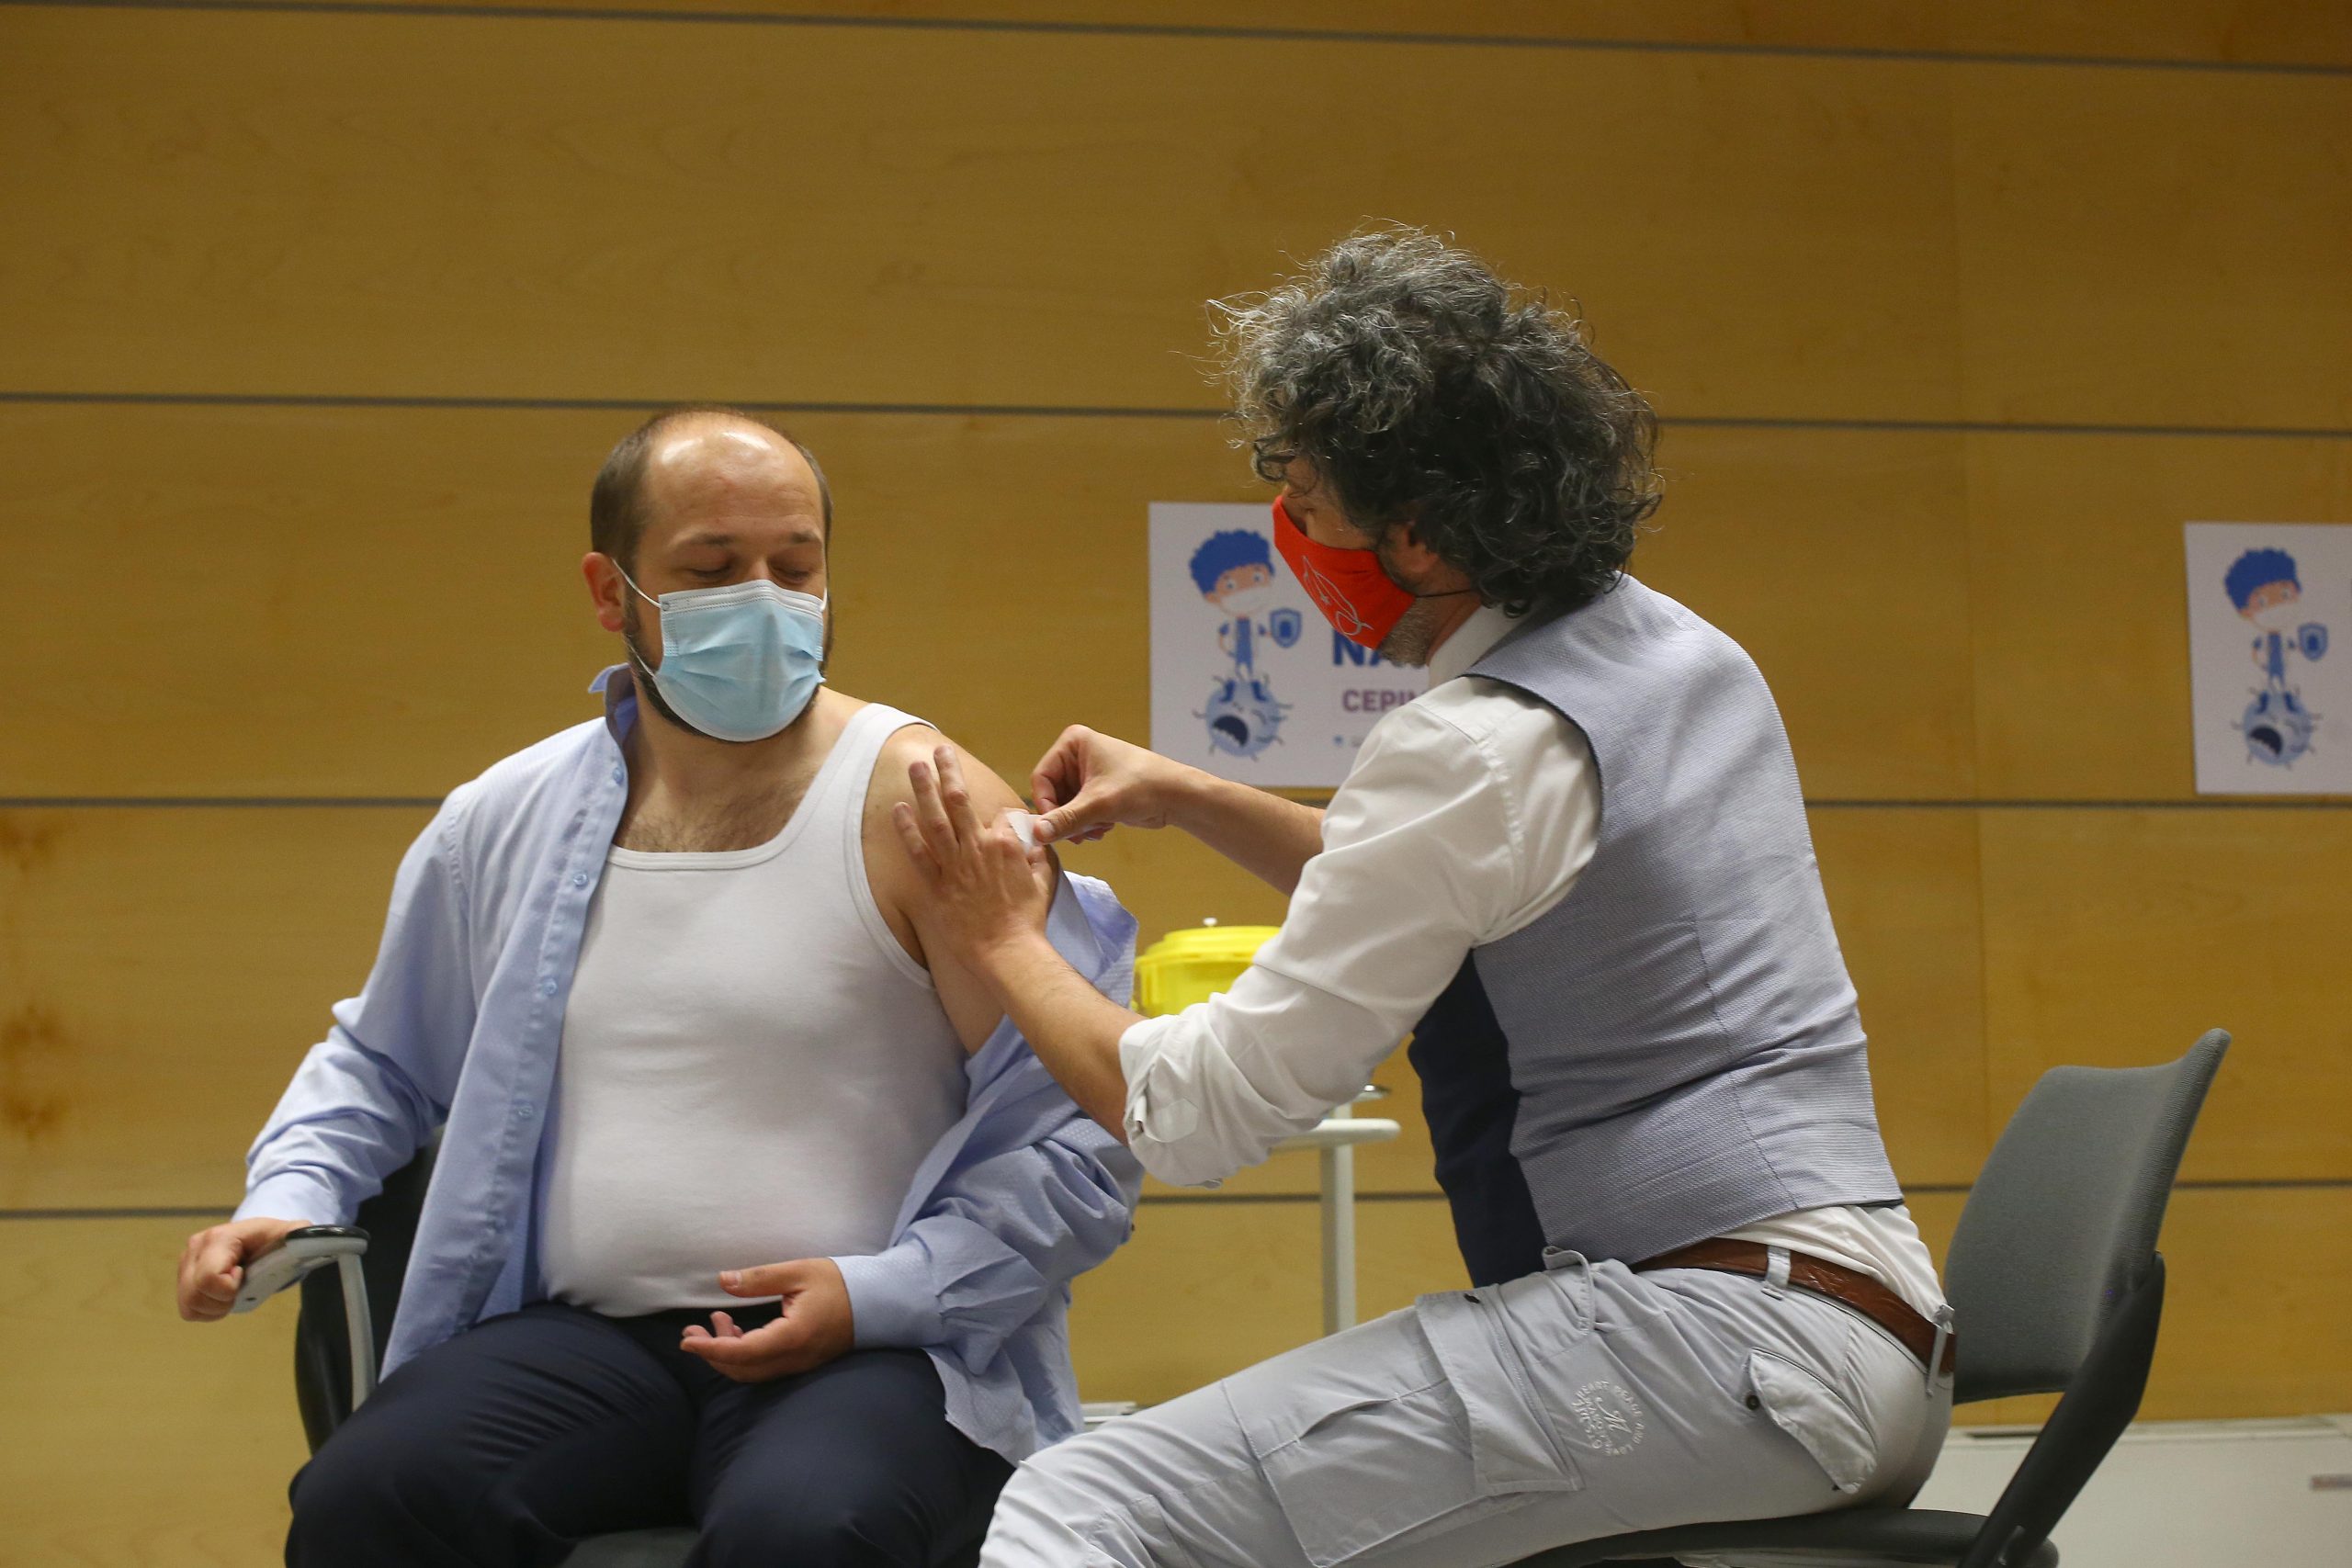 Cepljenje zdravstvenega ministra